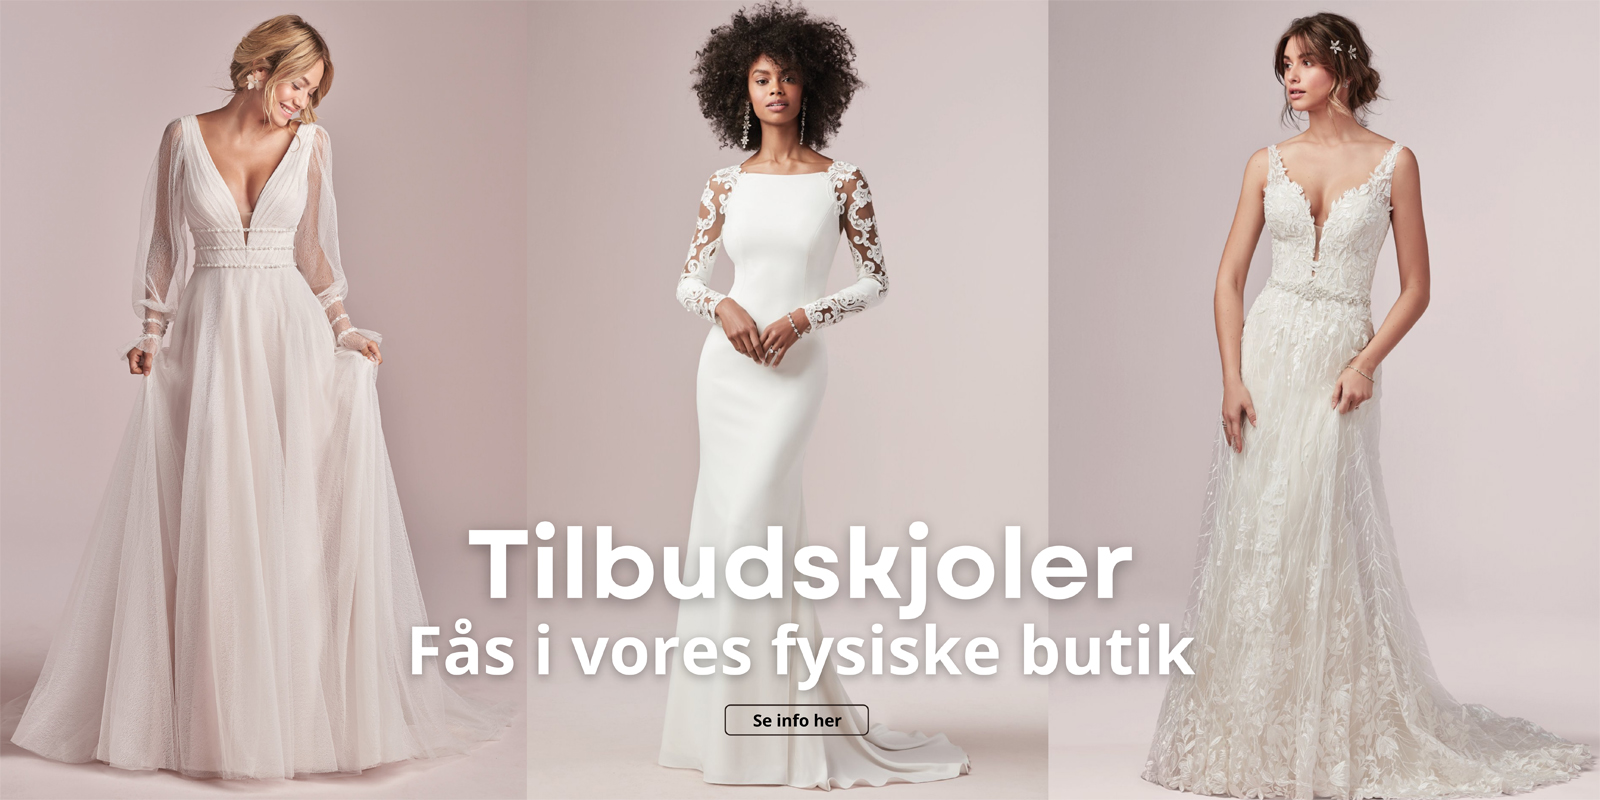 Flytte Forventning solopgang Stort udvalg af brudekjoler | Danmarks største brudekjolebutik